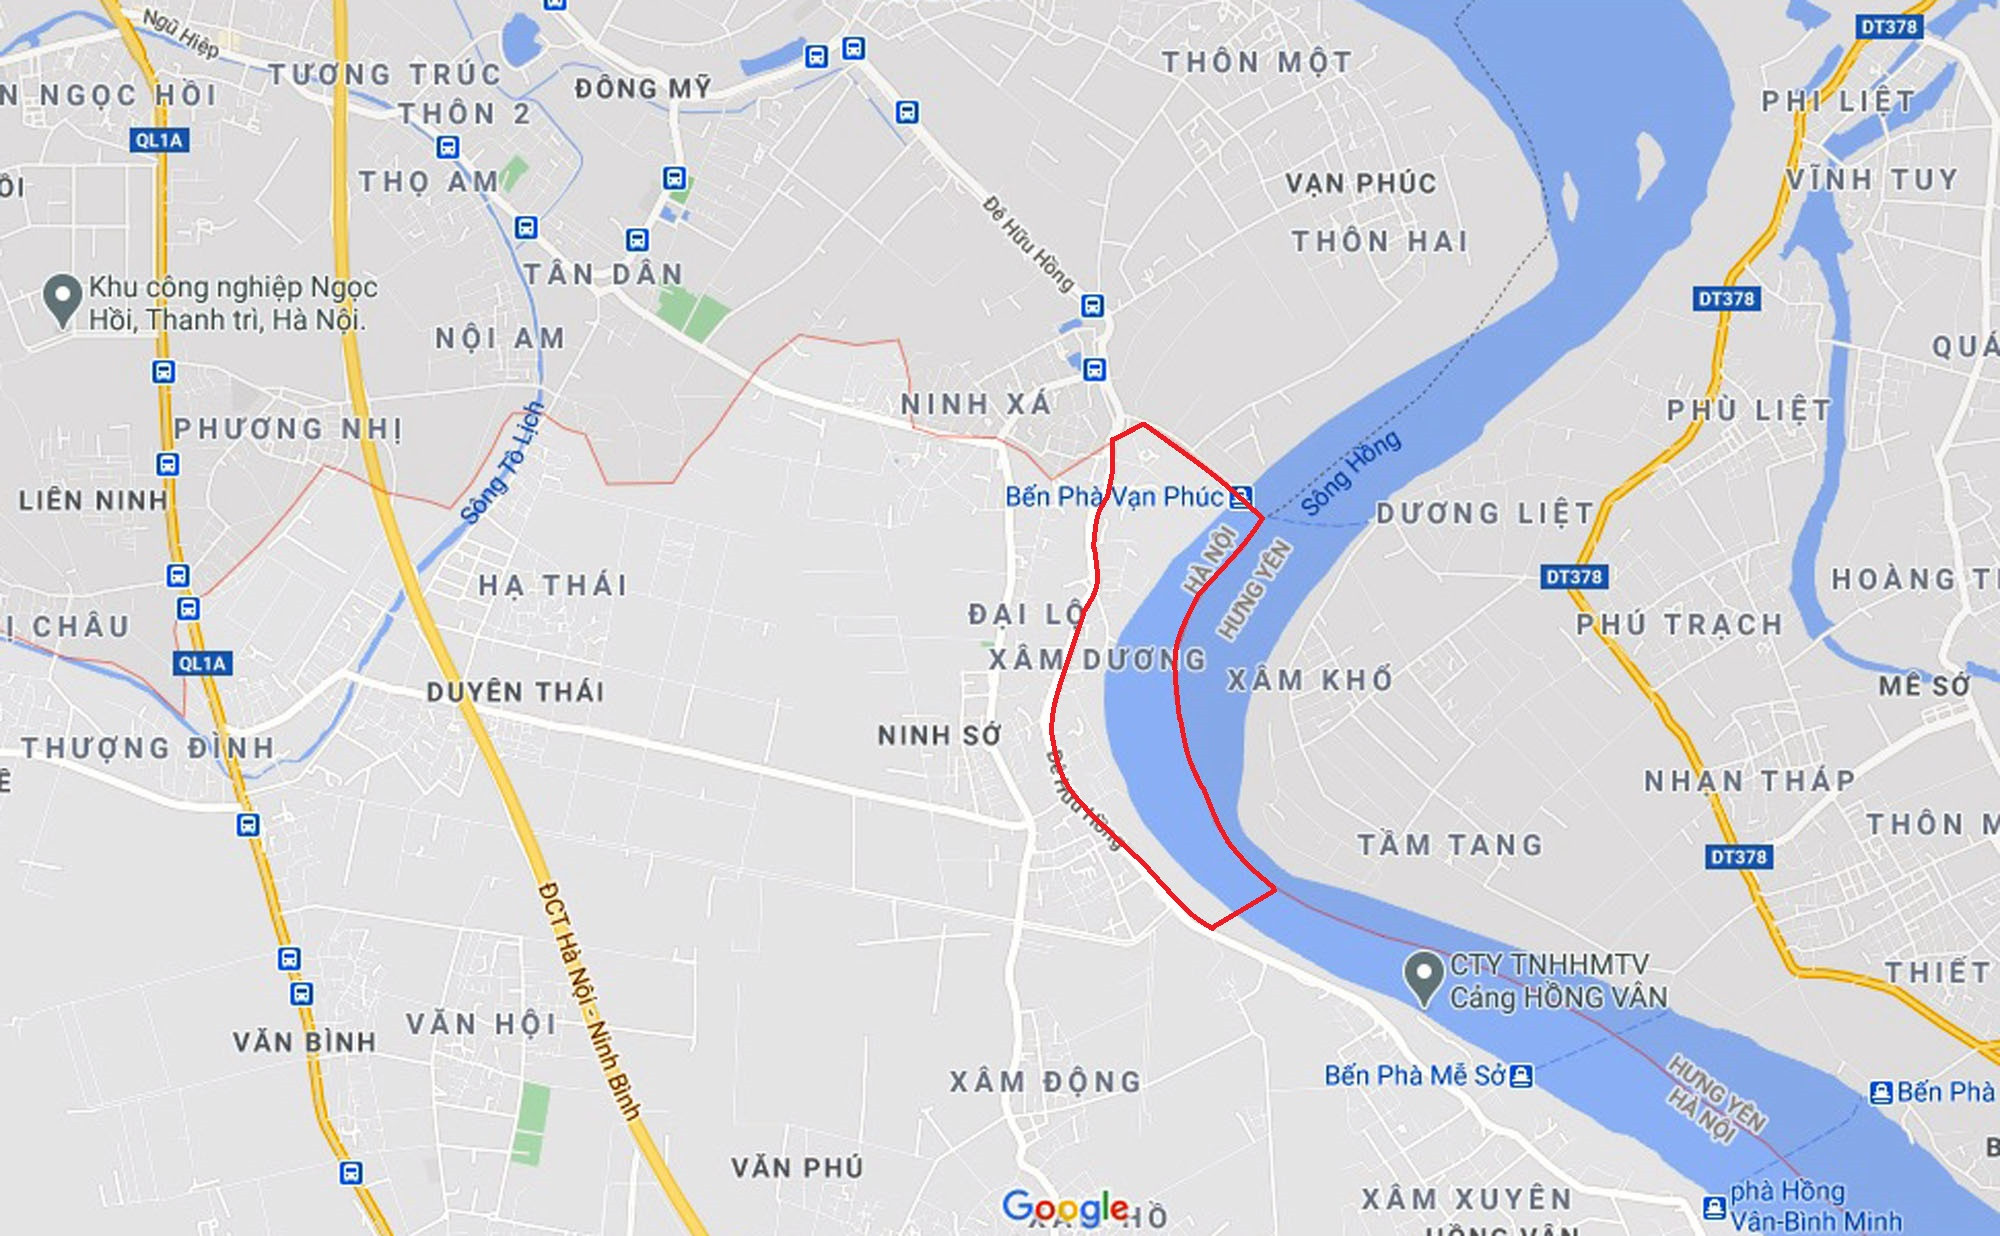 Hà Nội: Kiến nghị mở rộng phân khu đô thị sông Hồng là không có cơ sở